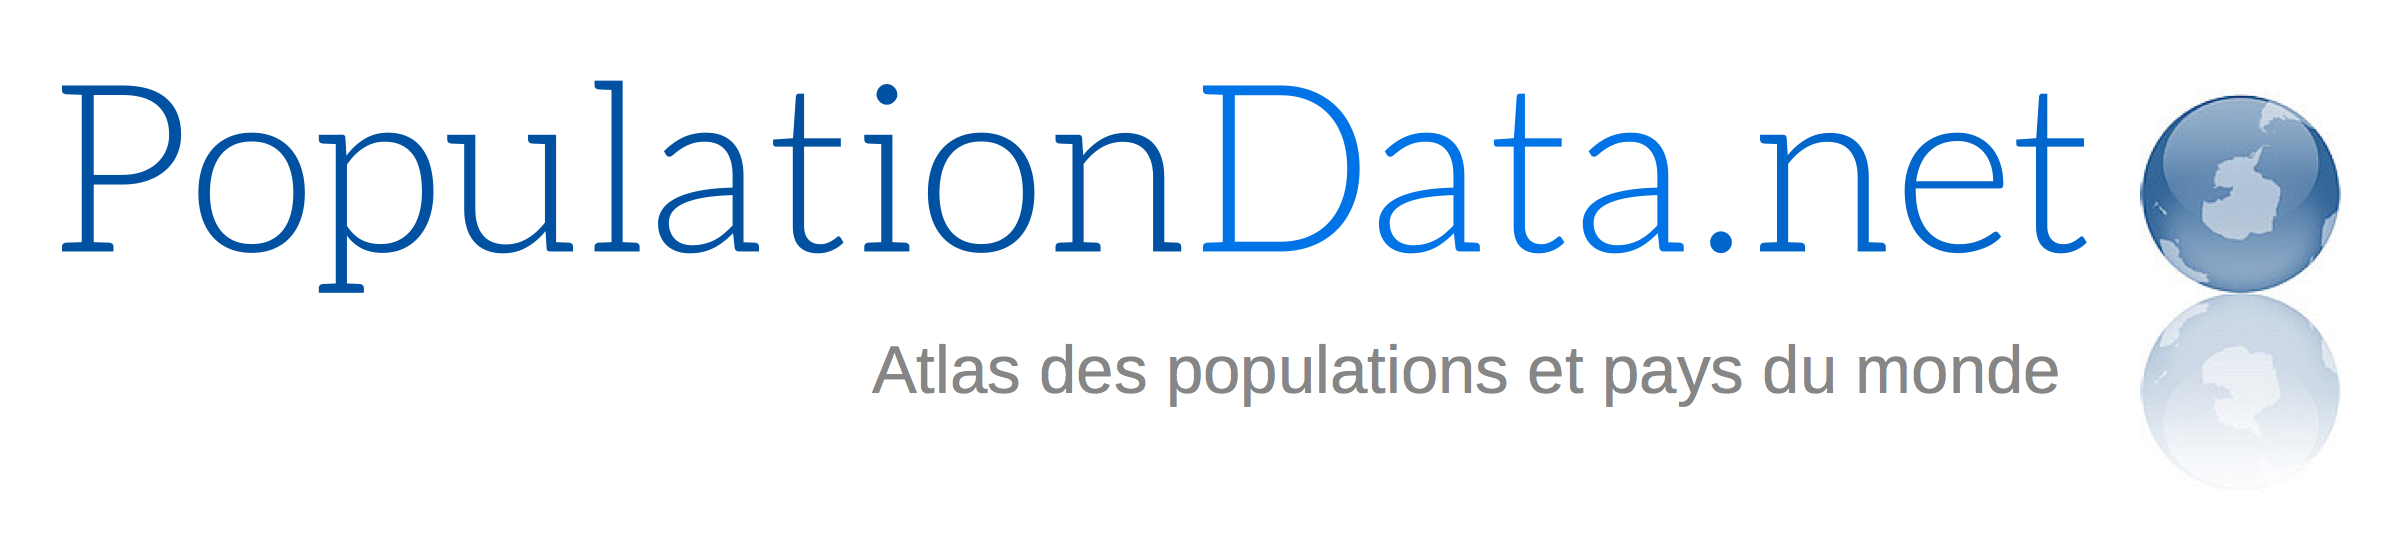 Populationdatanet Informations Cartes Et Statistiques